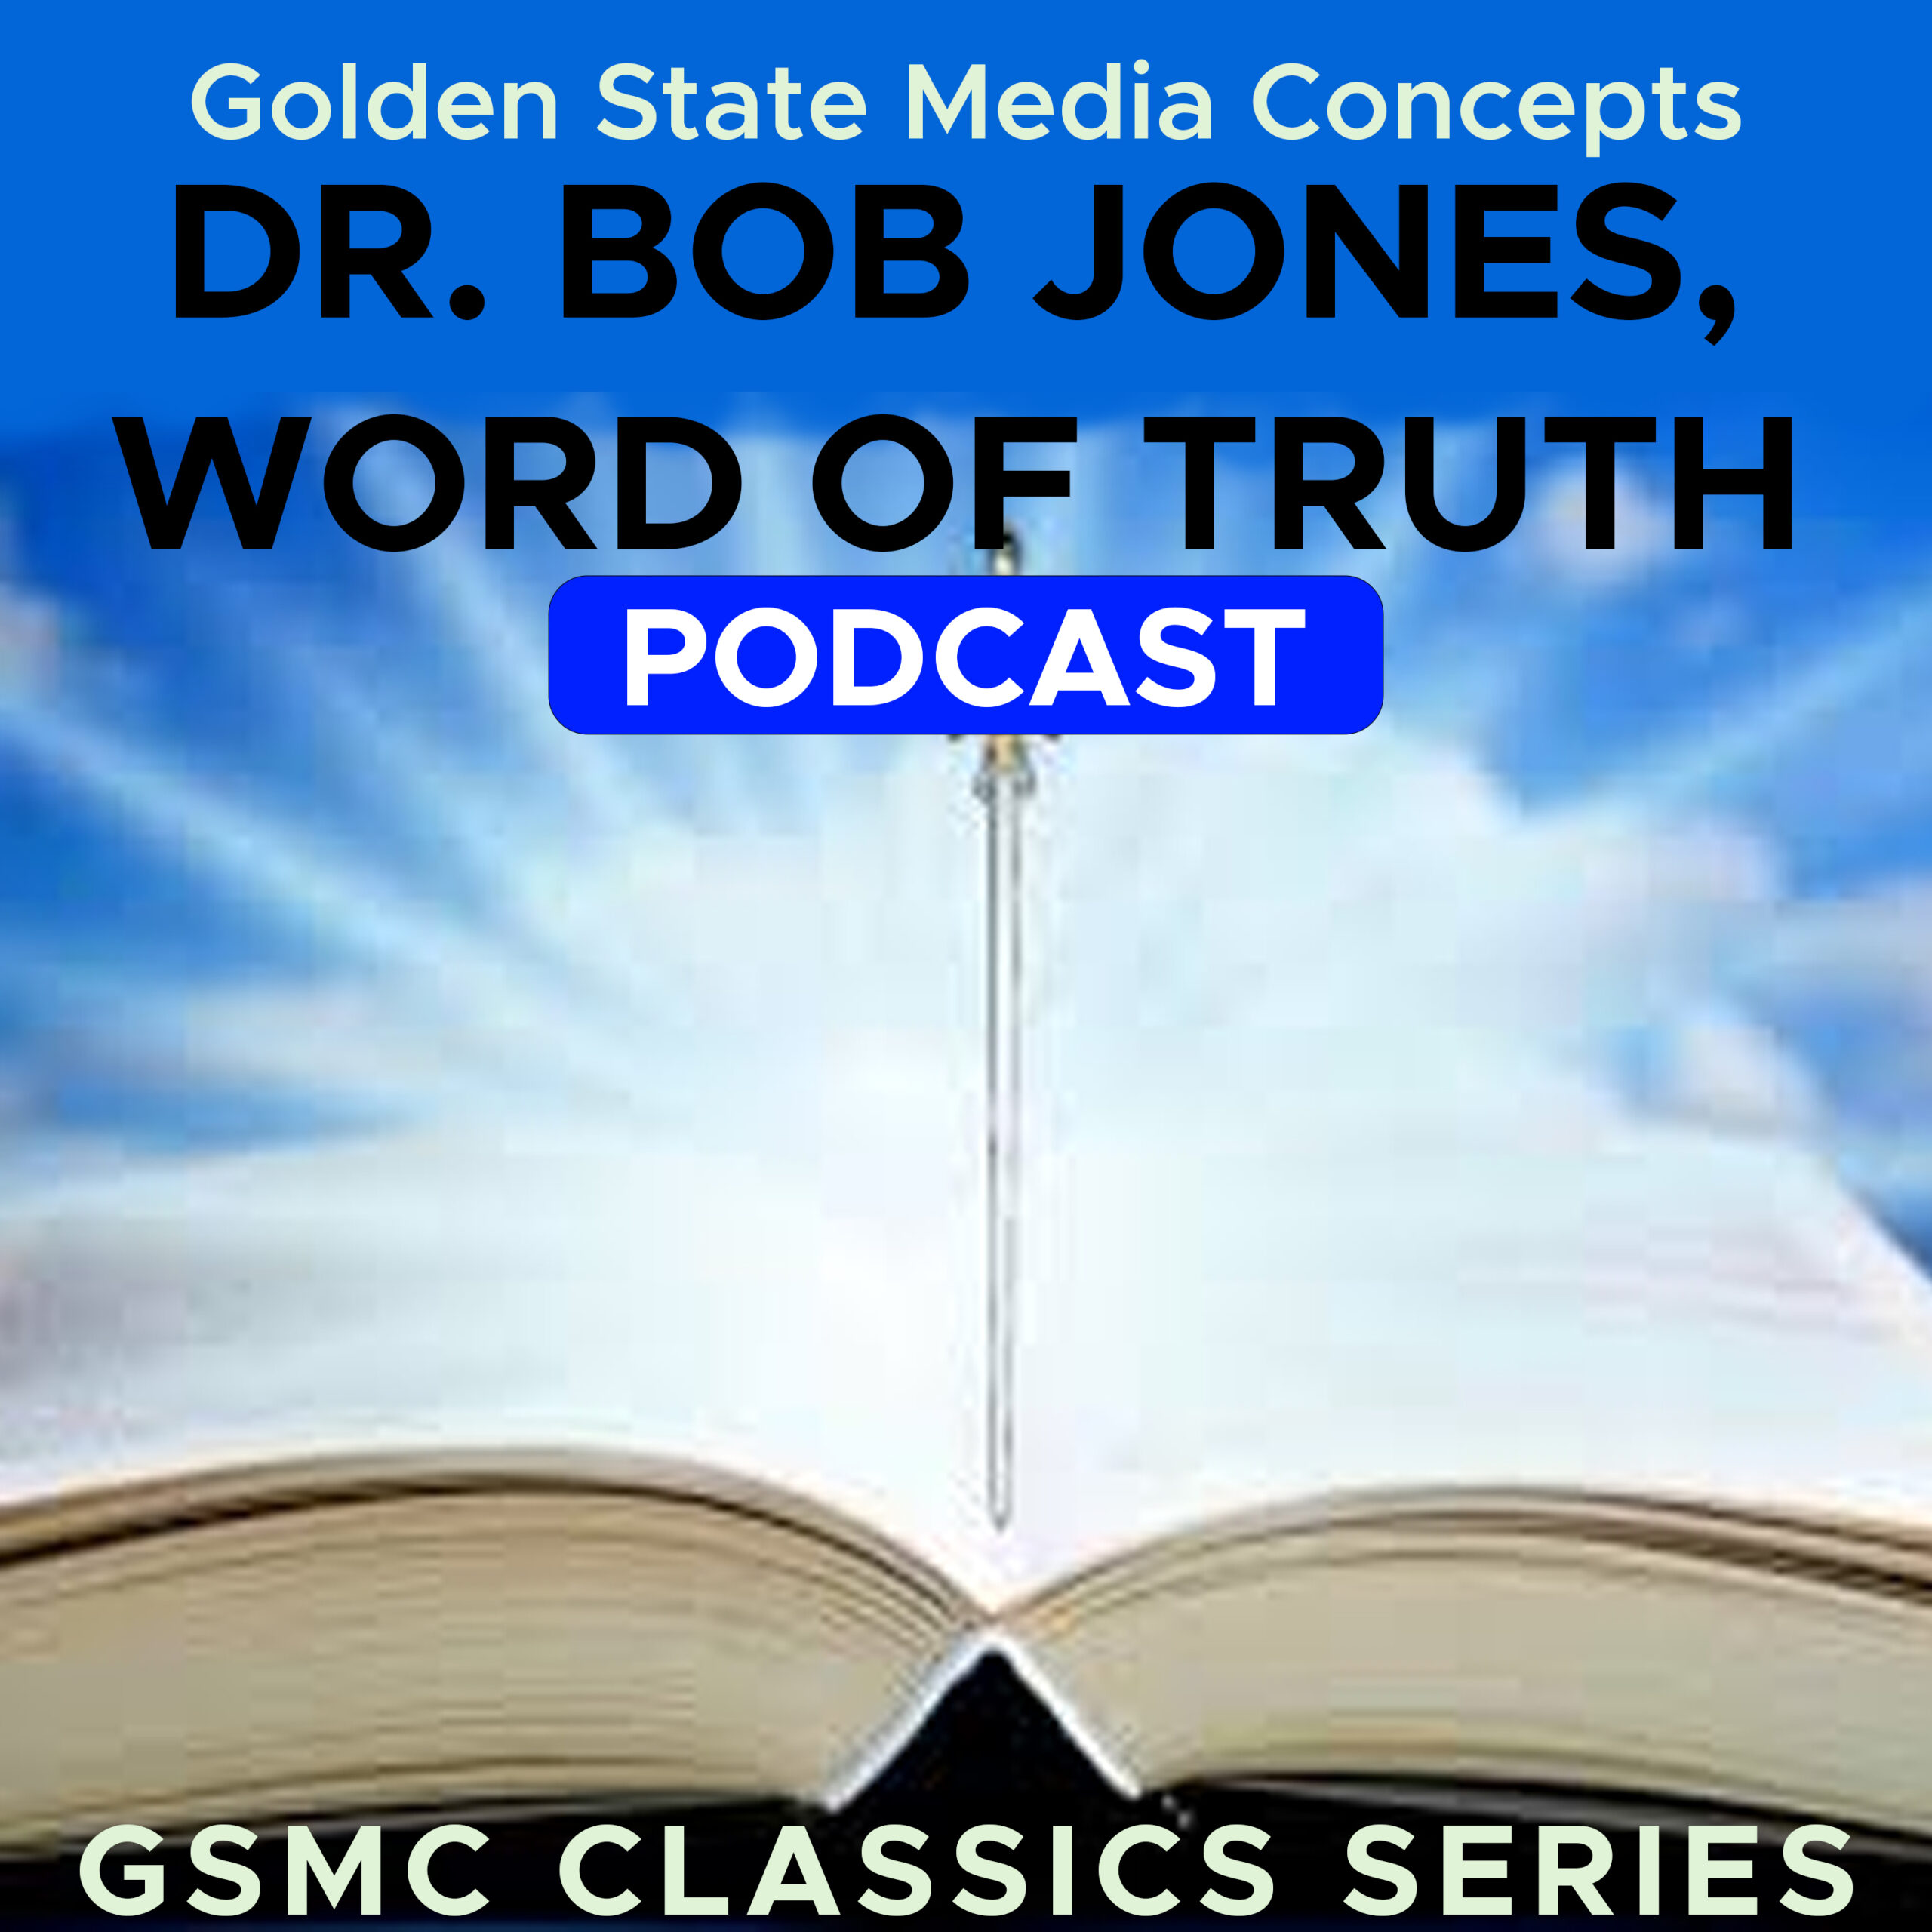 GSMC Classics: Dr. Bob Jones Word of Truth